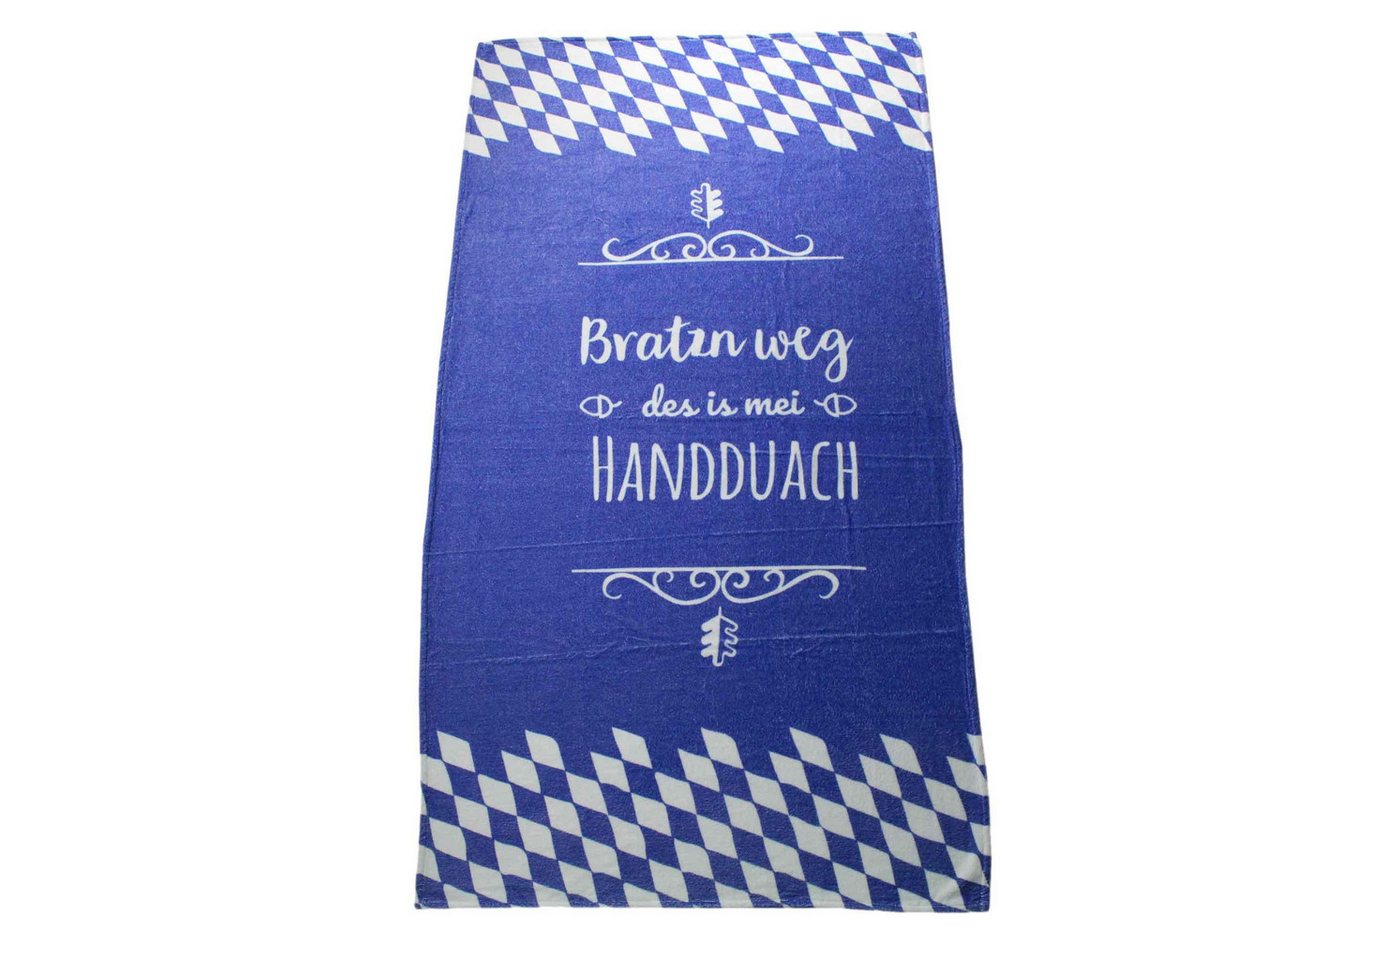 Bavariashop Handtuch Handtuch "Bratzn weg" • Bayerisches Badetuch • 80 x 155 cm, Frottee, Baumwolle, garngefärbt von Bavariashop